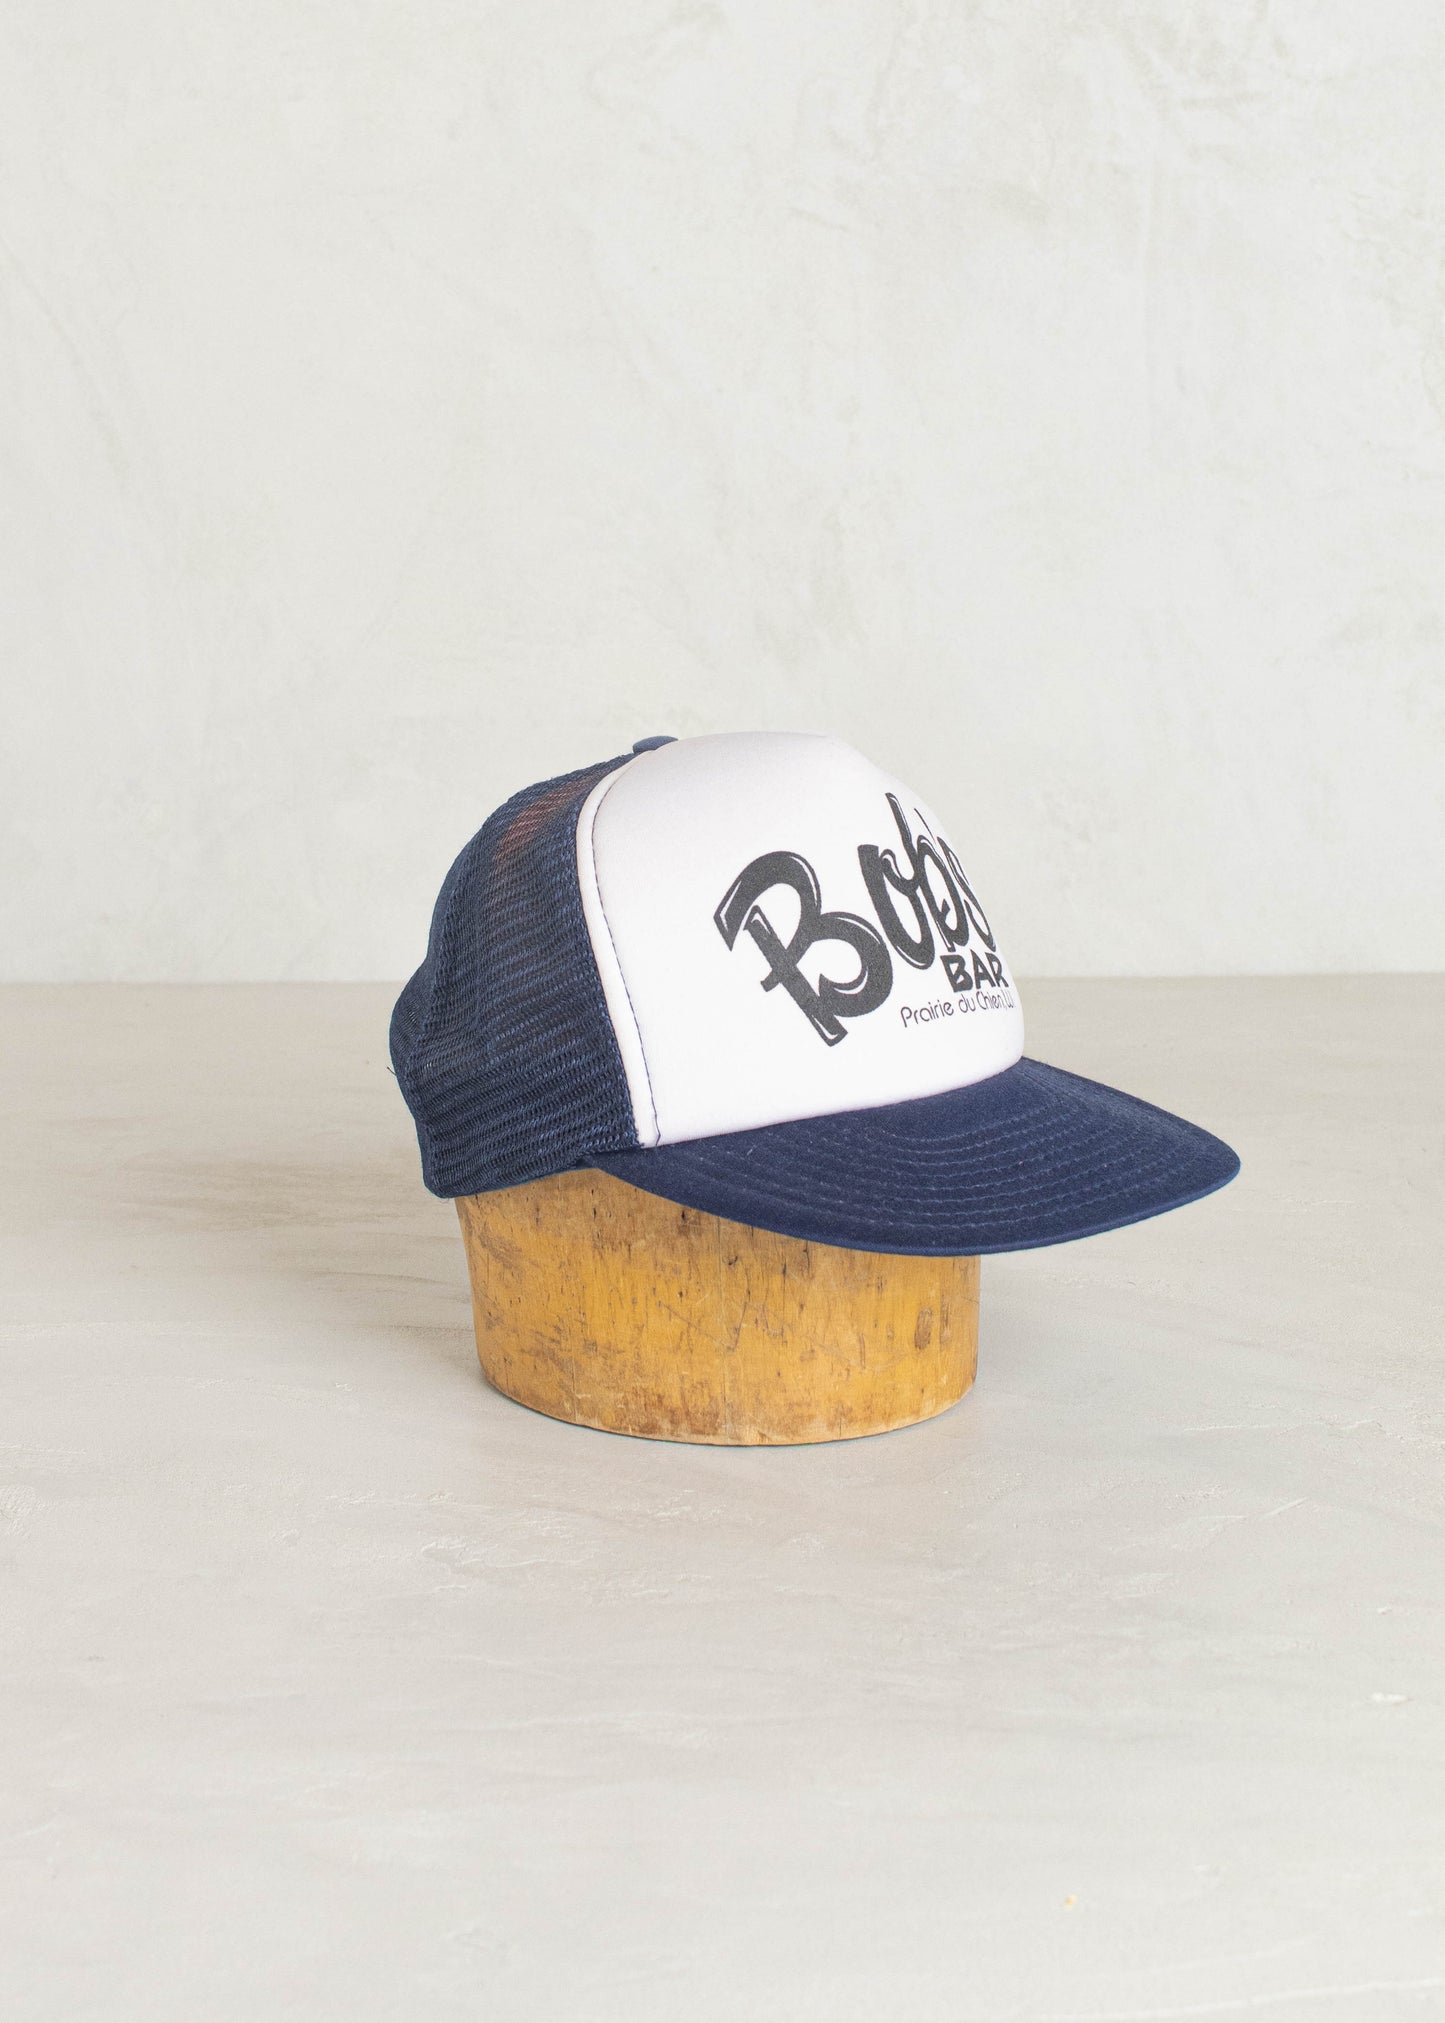 1980s San-Sun Bob's Bar Wisconsin Trucker Hat